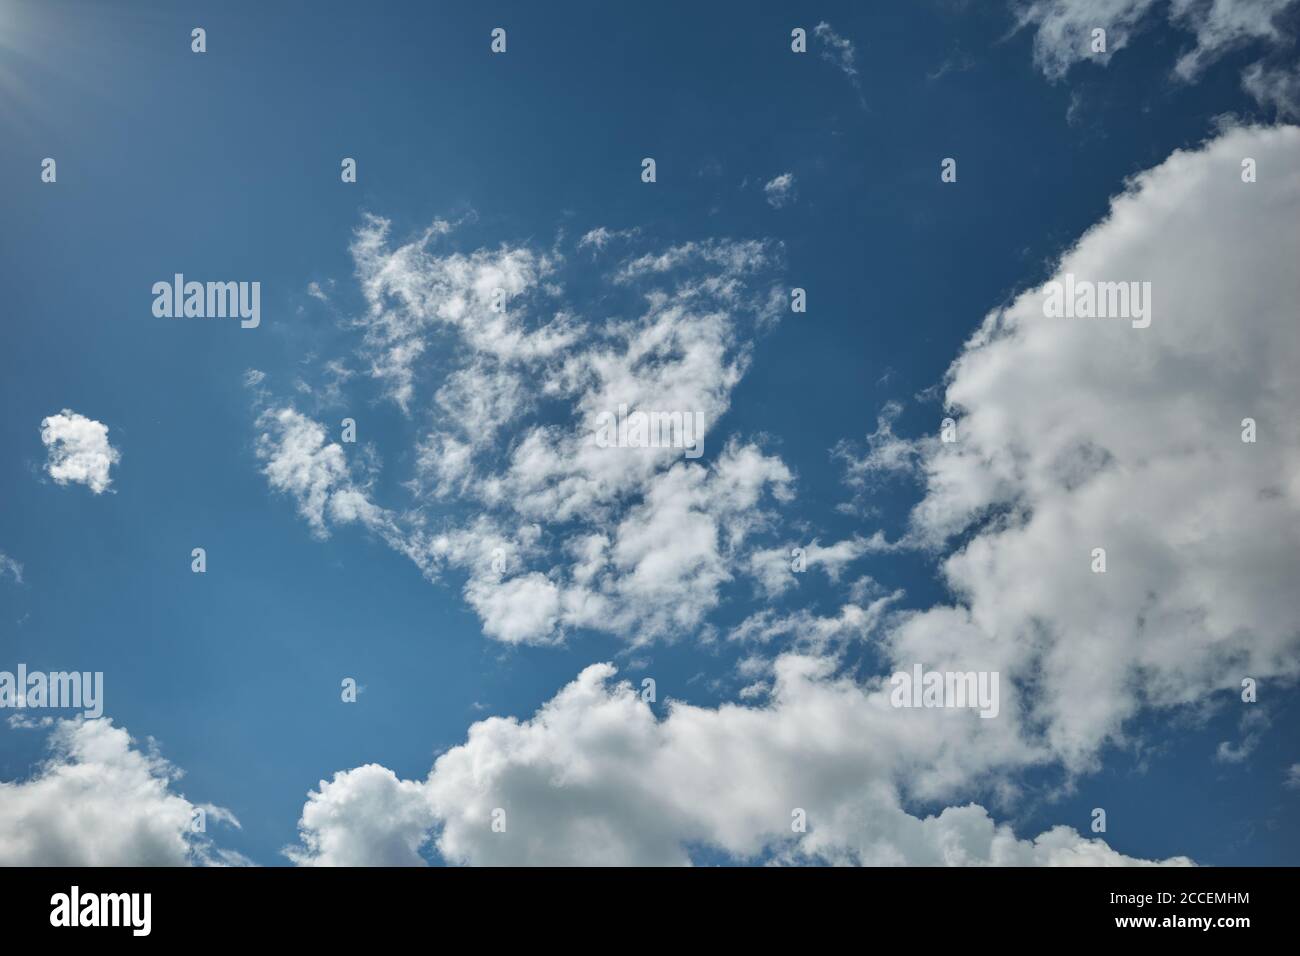 Blauer Himmel mit Wolken, die von der hellen Sonne beleuchtet werden. Die Sonnenstrahlen erleuchteten einen blauen Himmel`s Wolken. Hintergrund für Vorhersage und Meteorologie Illustration Stockfoto